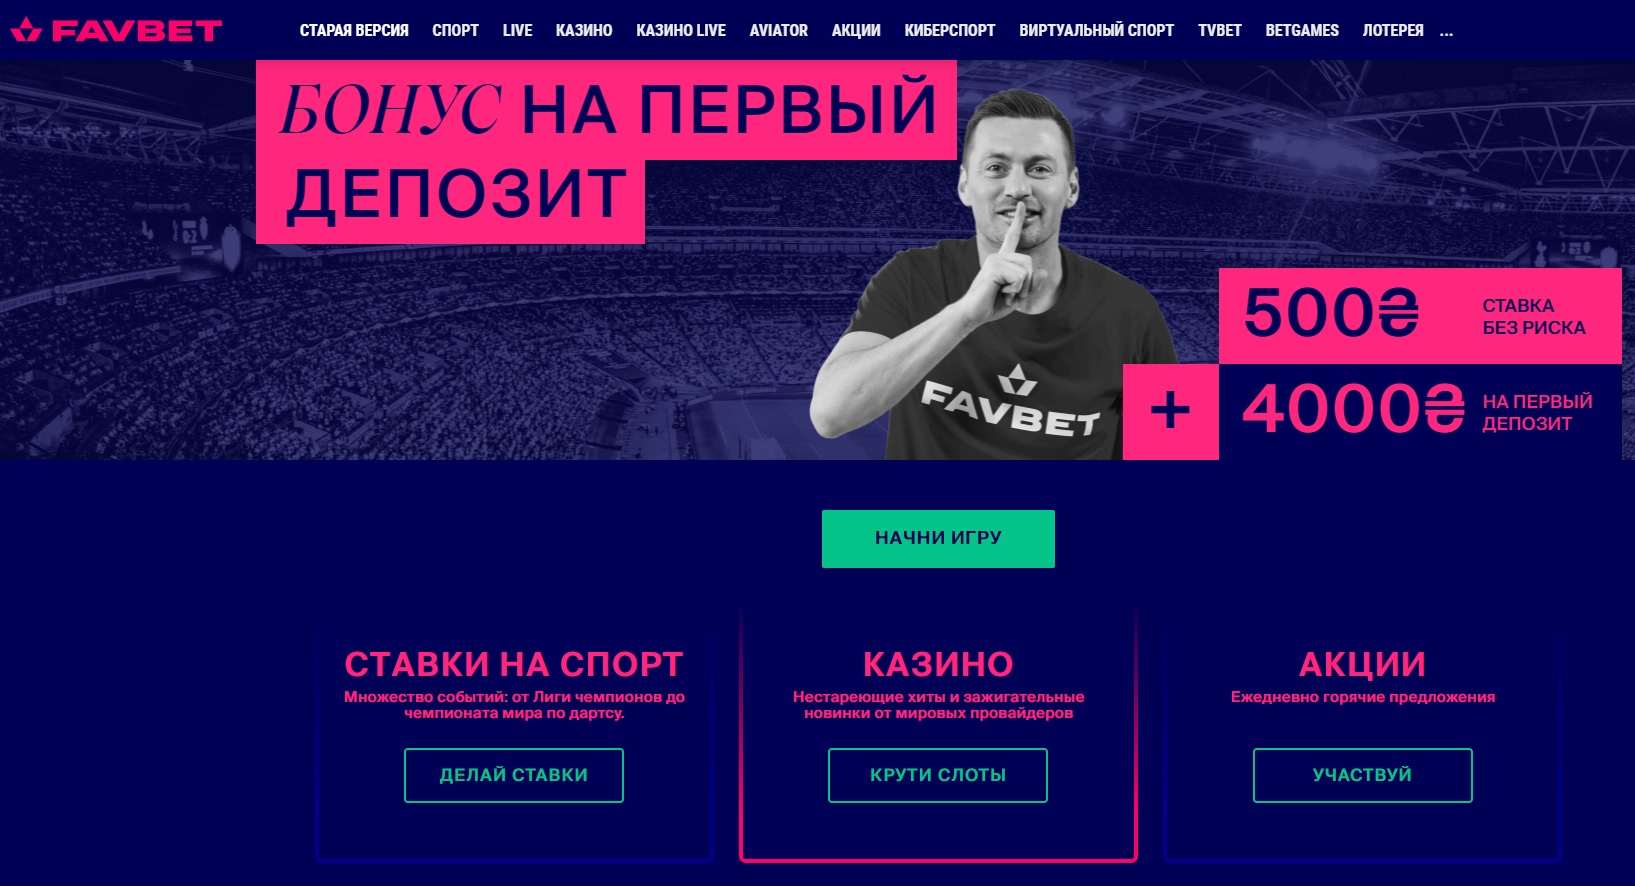 sajt favbet com